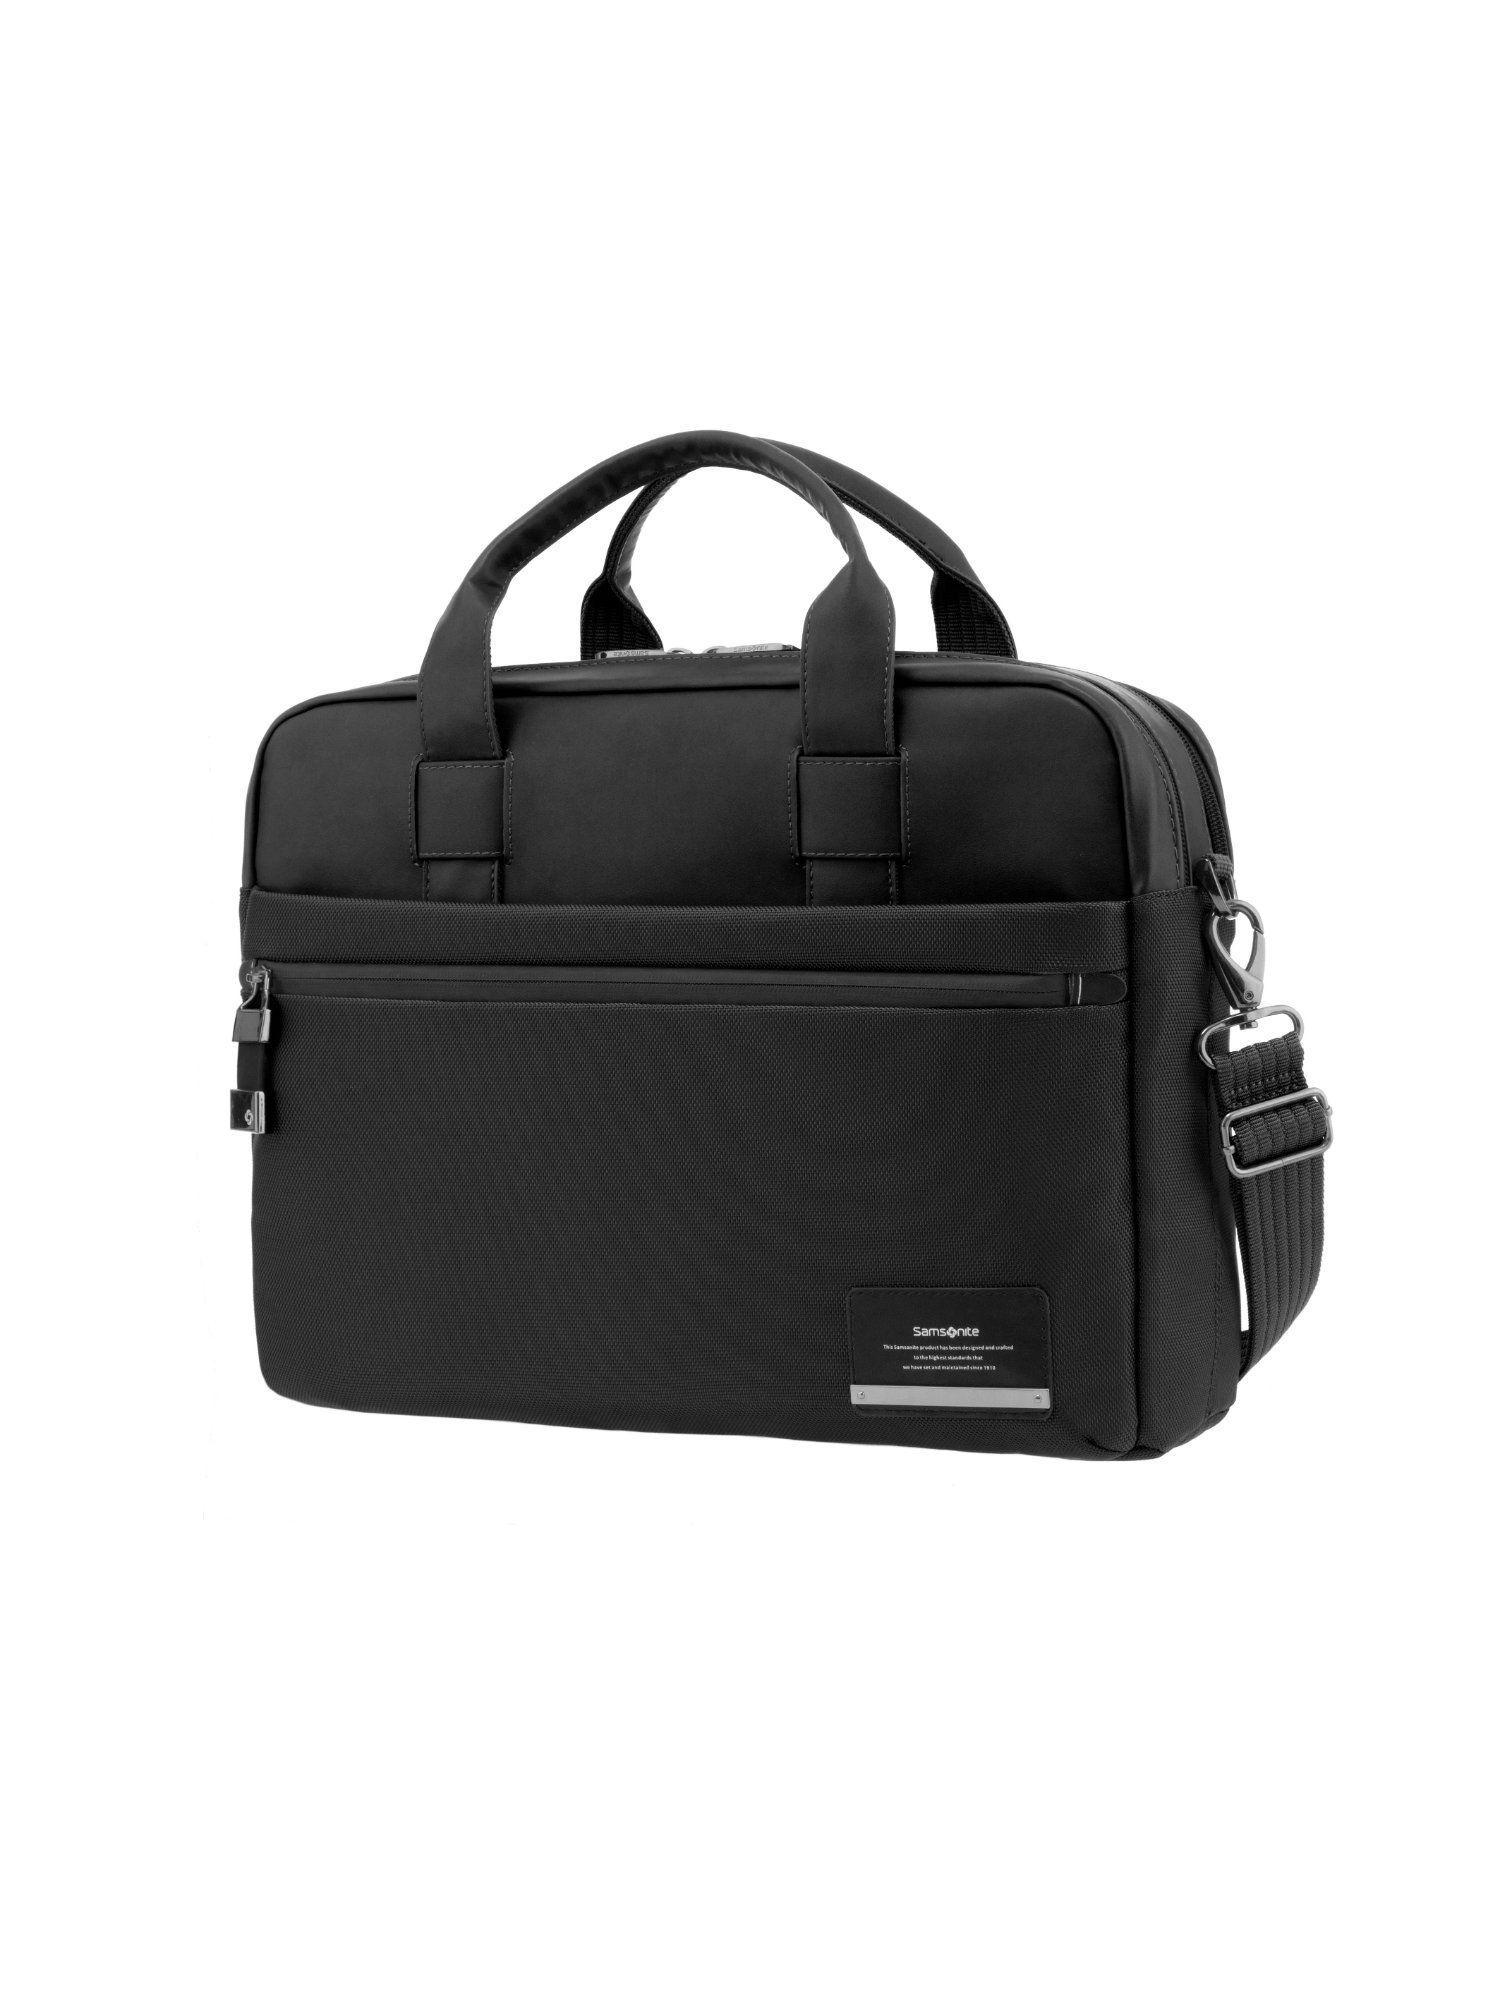 laptop bag for men | vestor one side bag | office bag for men | small bailhandle briefcase messenger bag